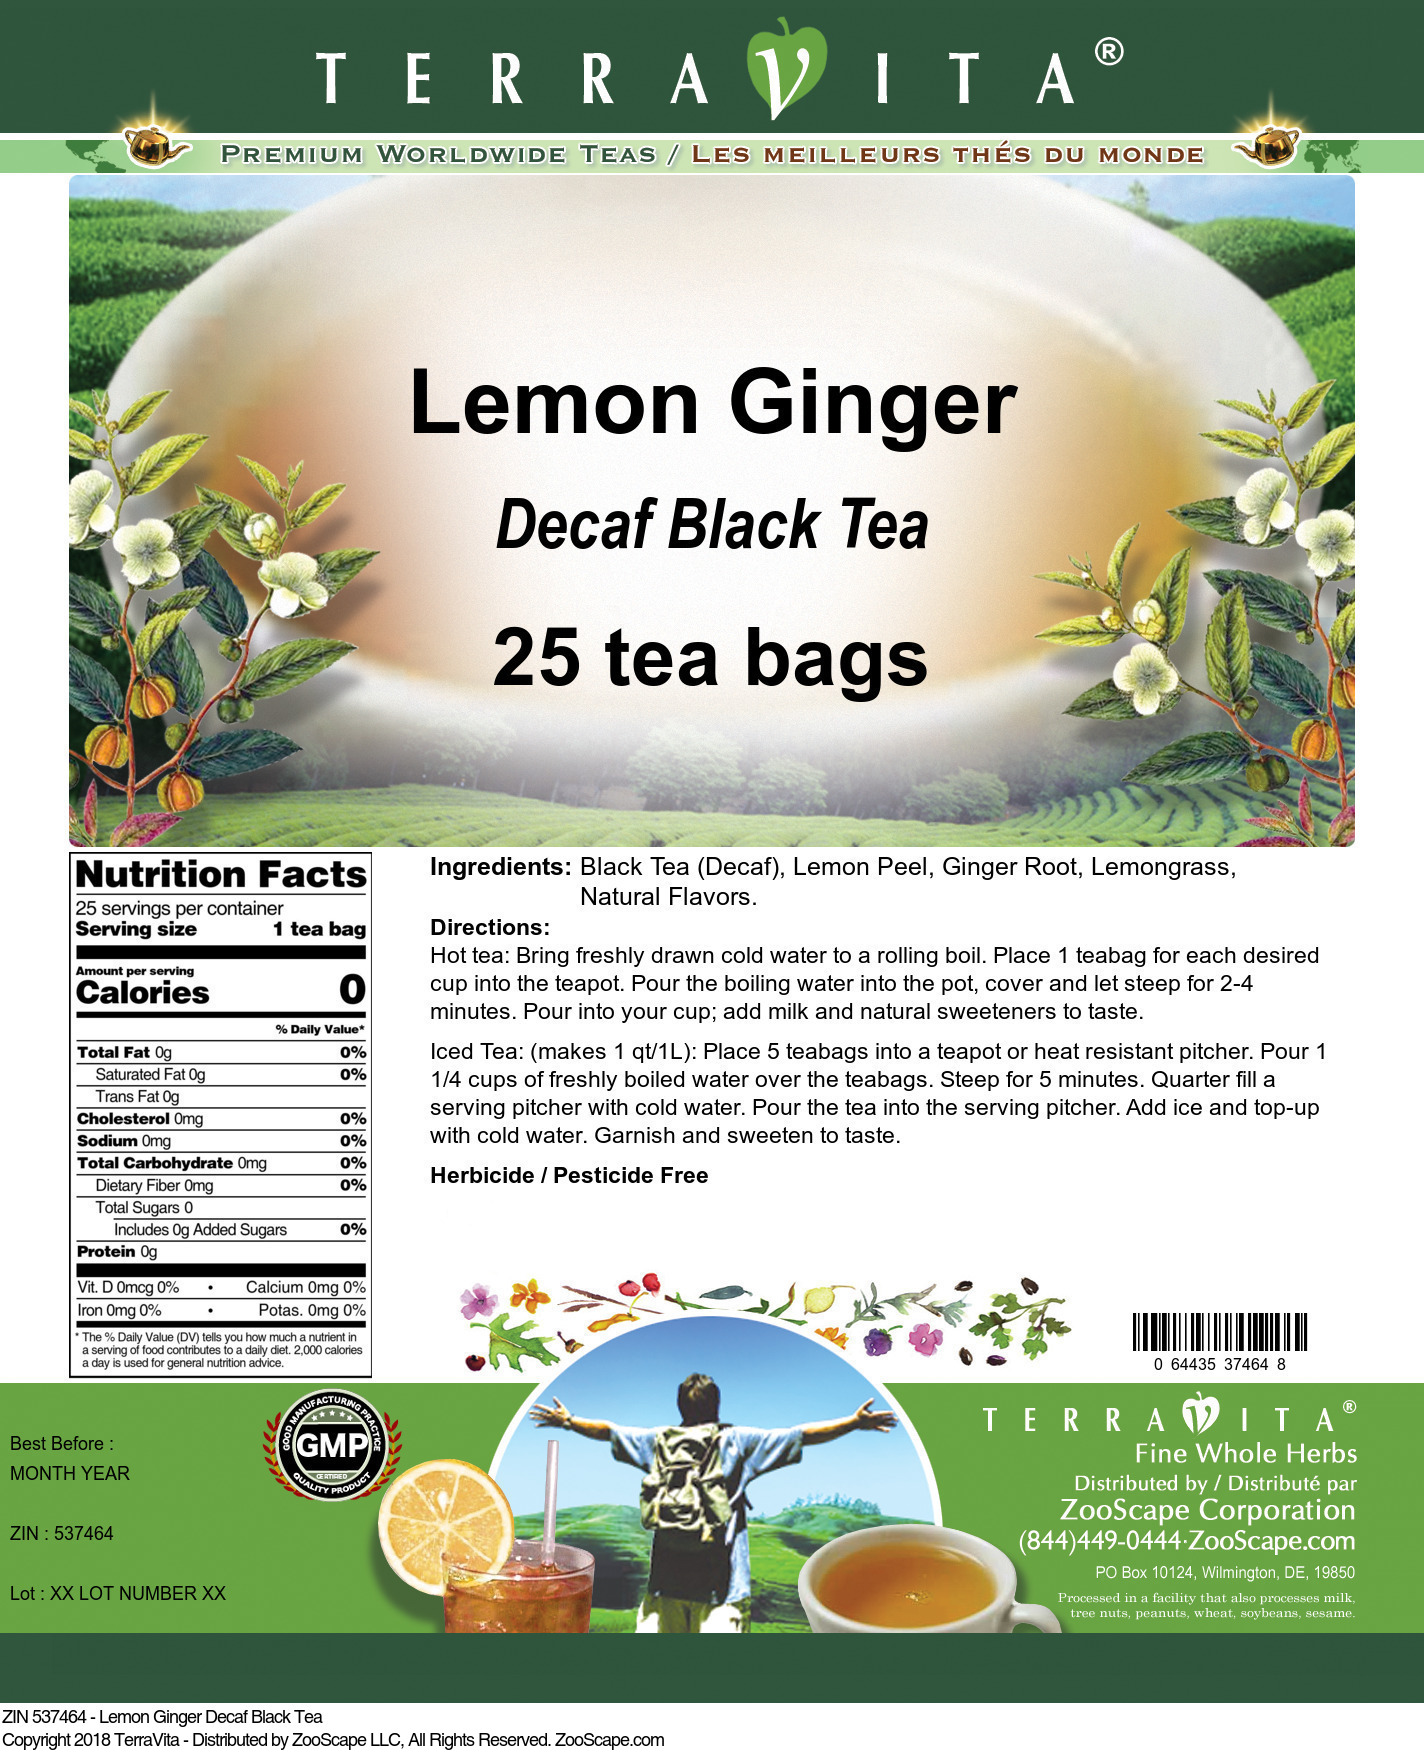 Lemon Ginger Decaf Black Tea - Label